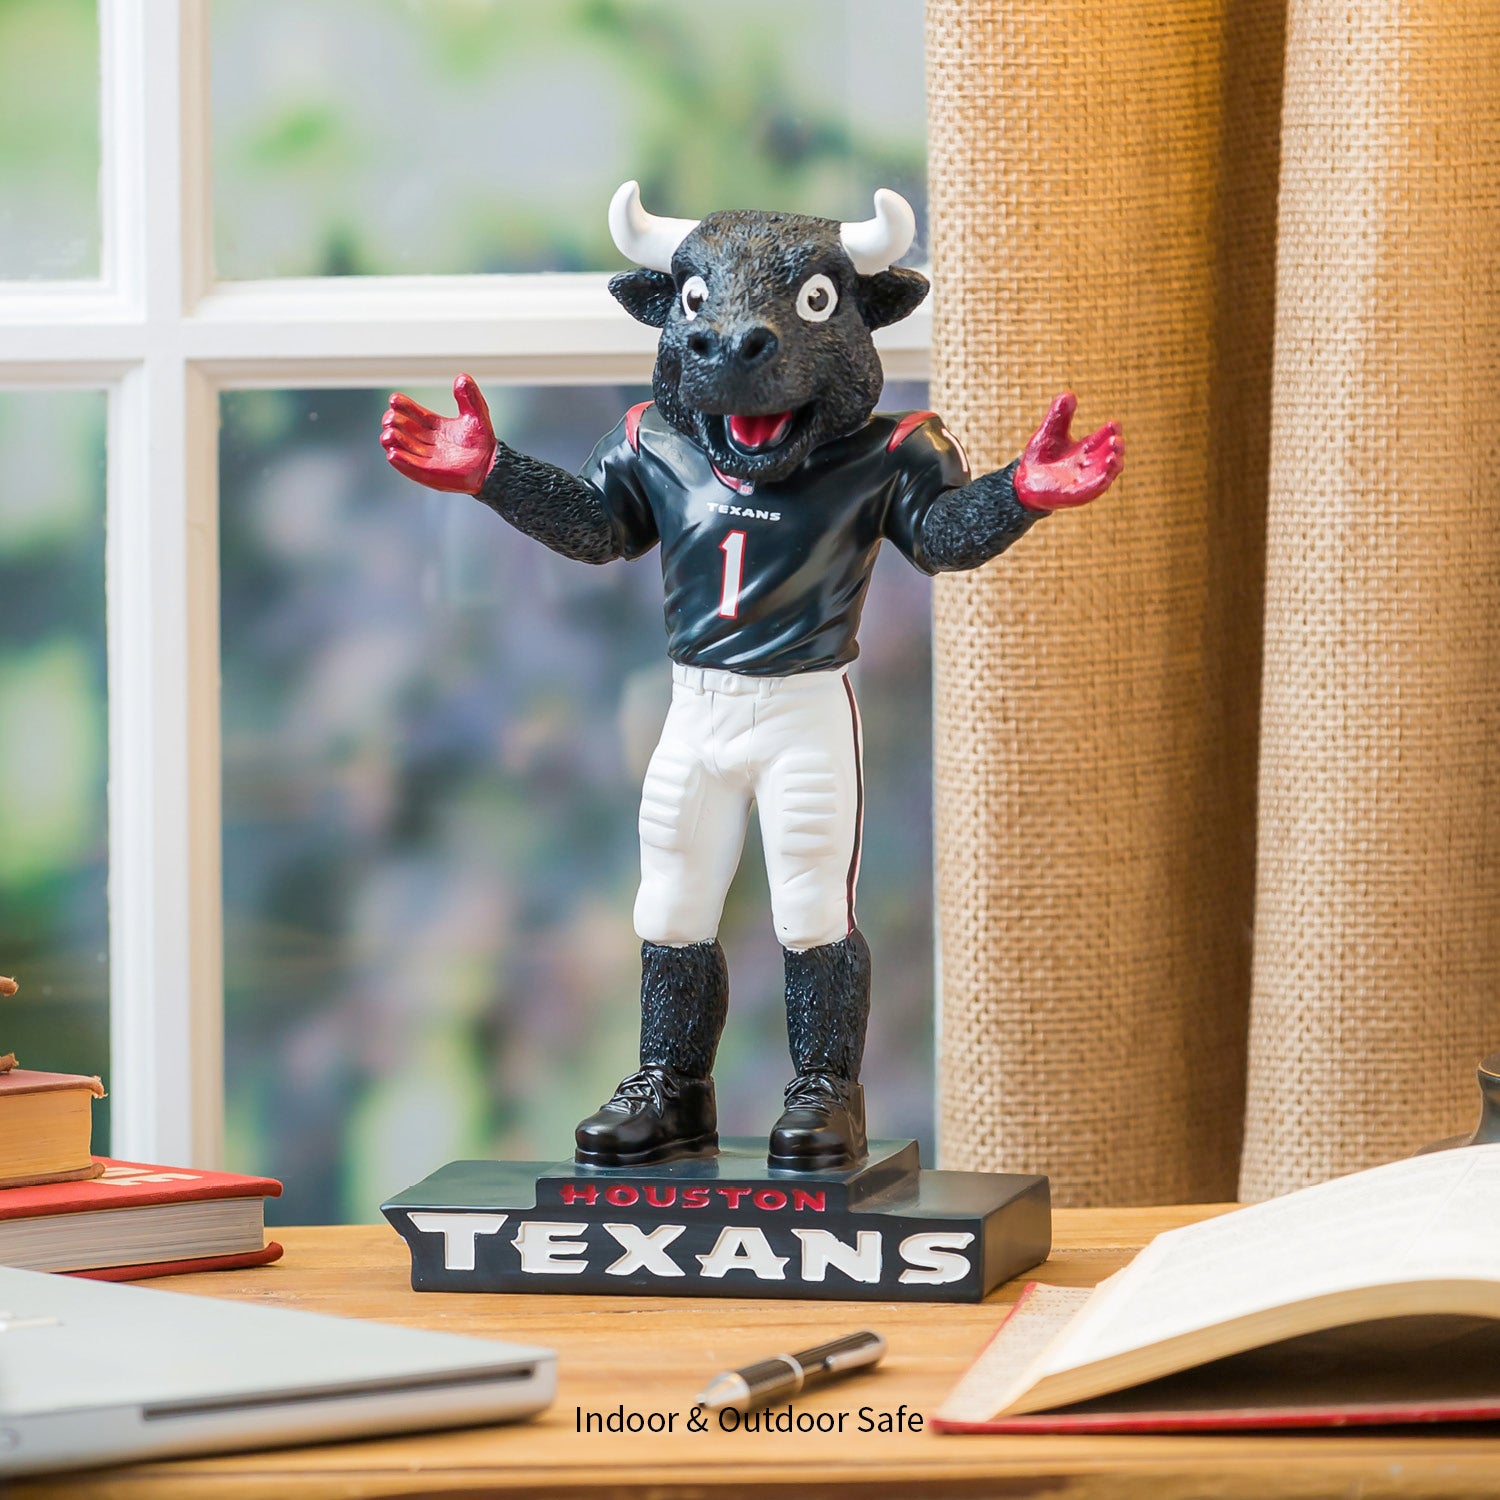 Houston Texans Mascot Statue